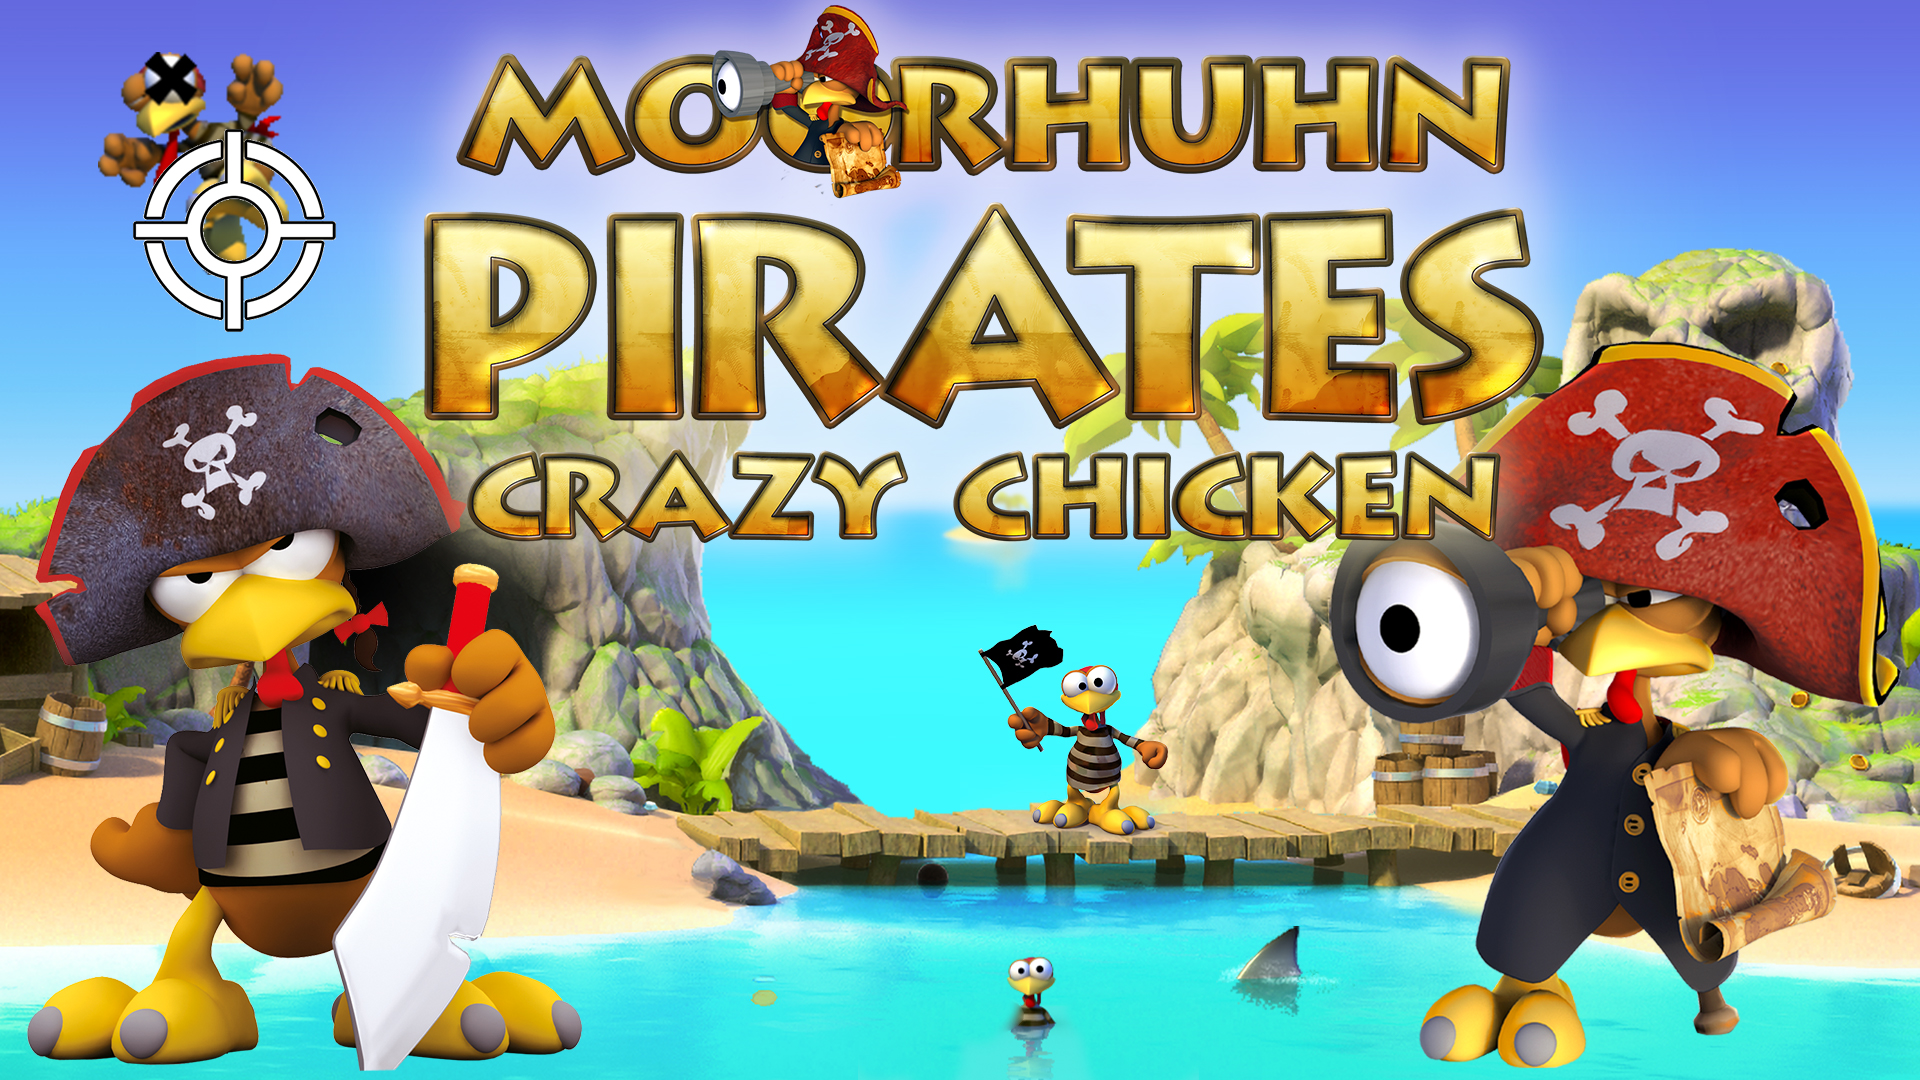 Moorhuhn Pirates - Crazy Chicken Pirates